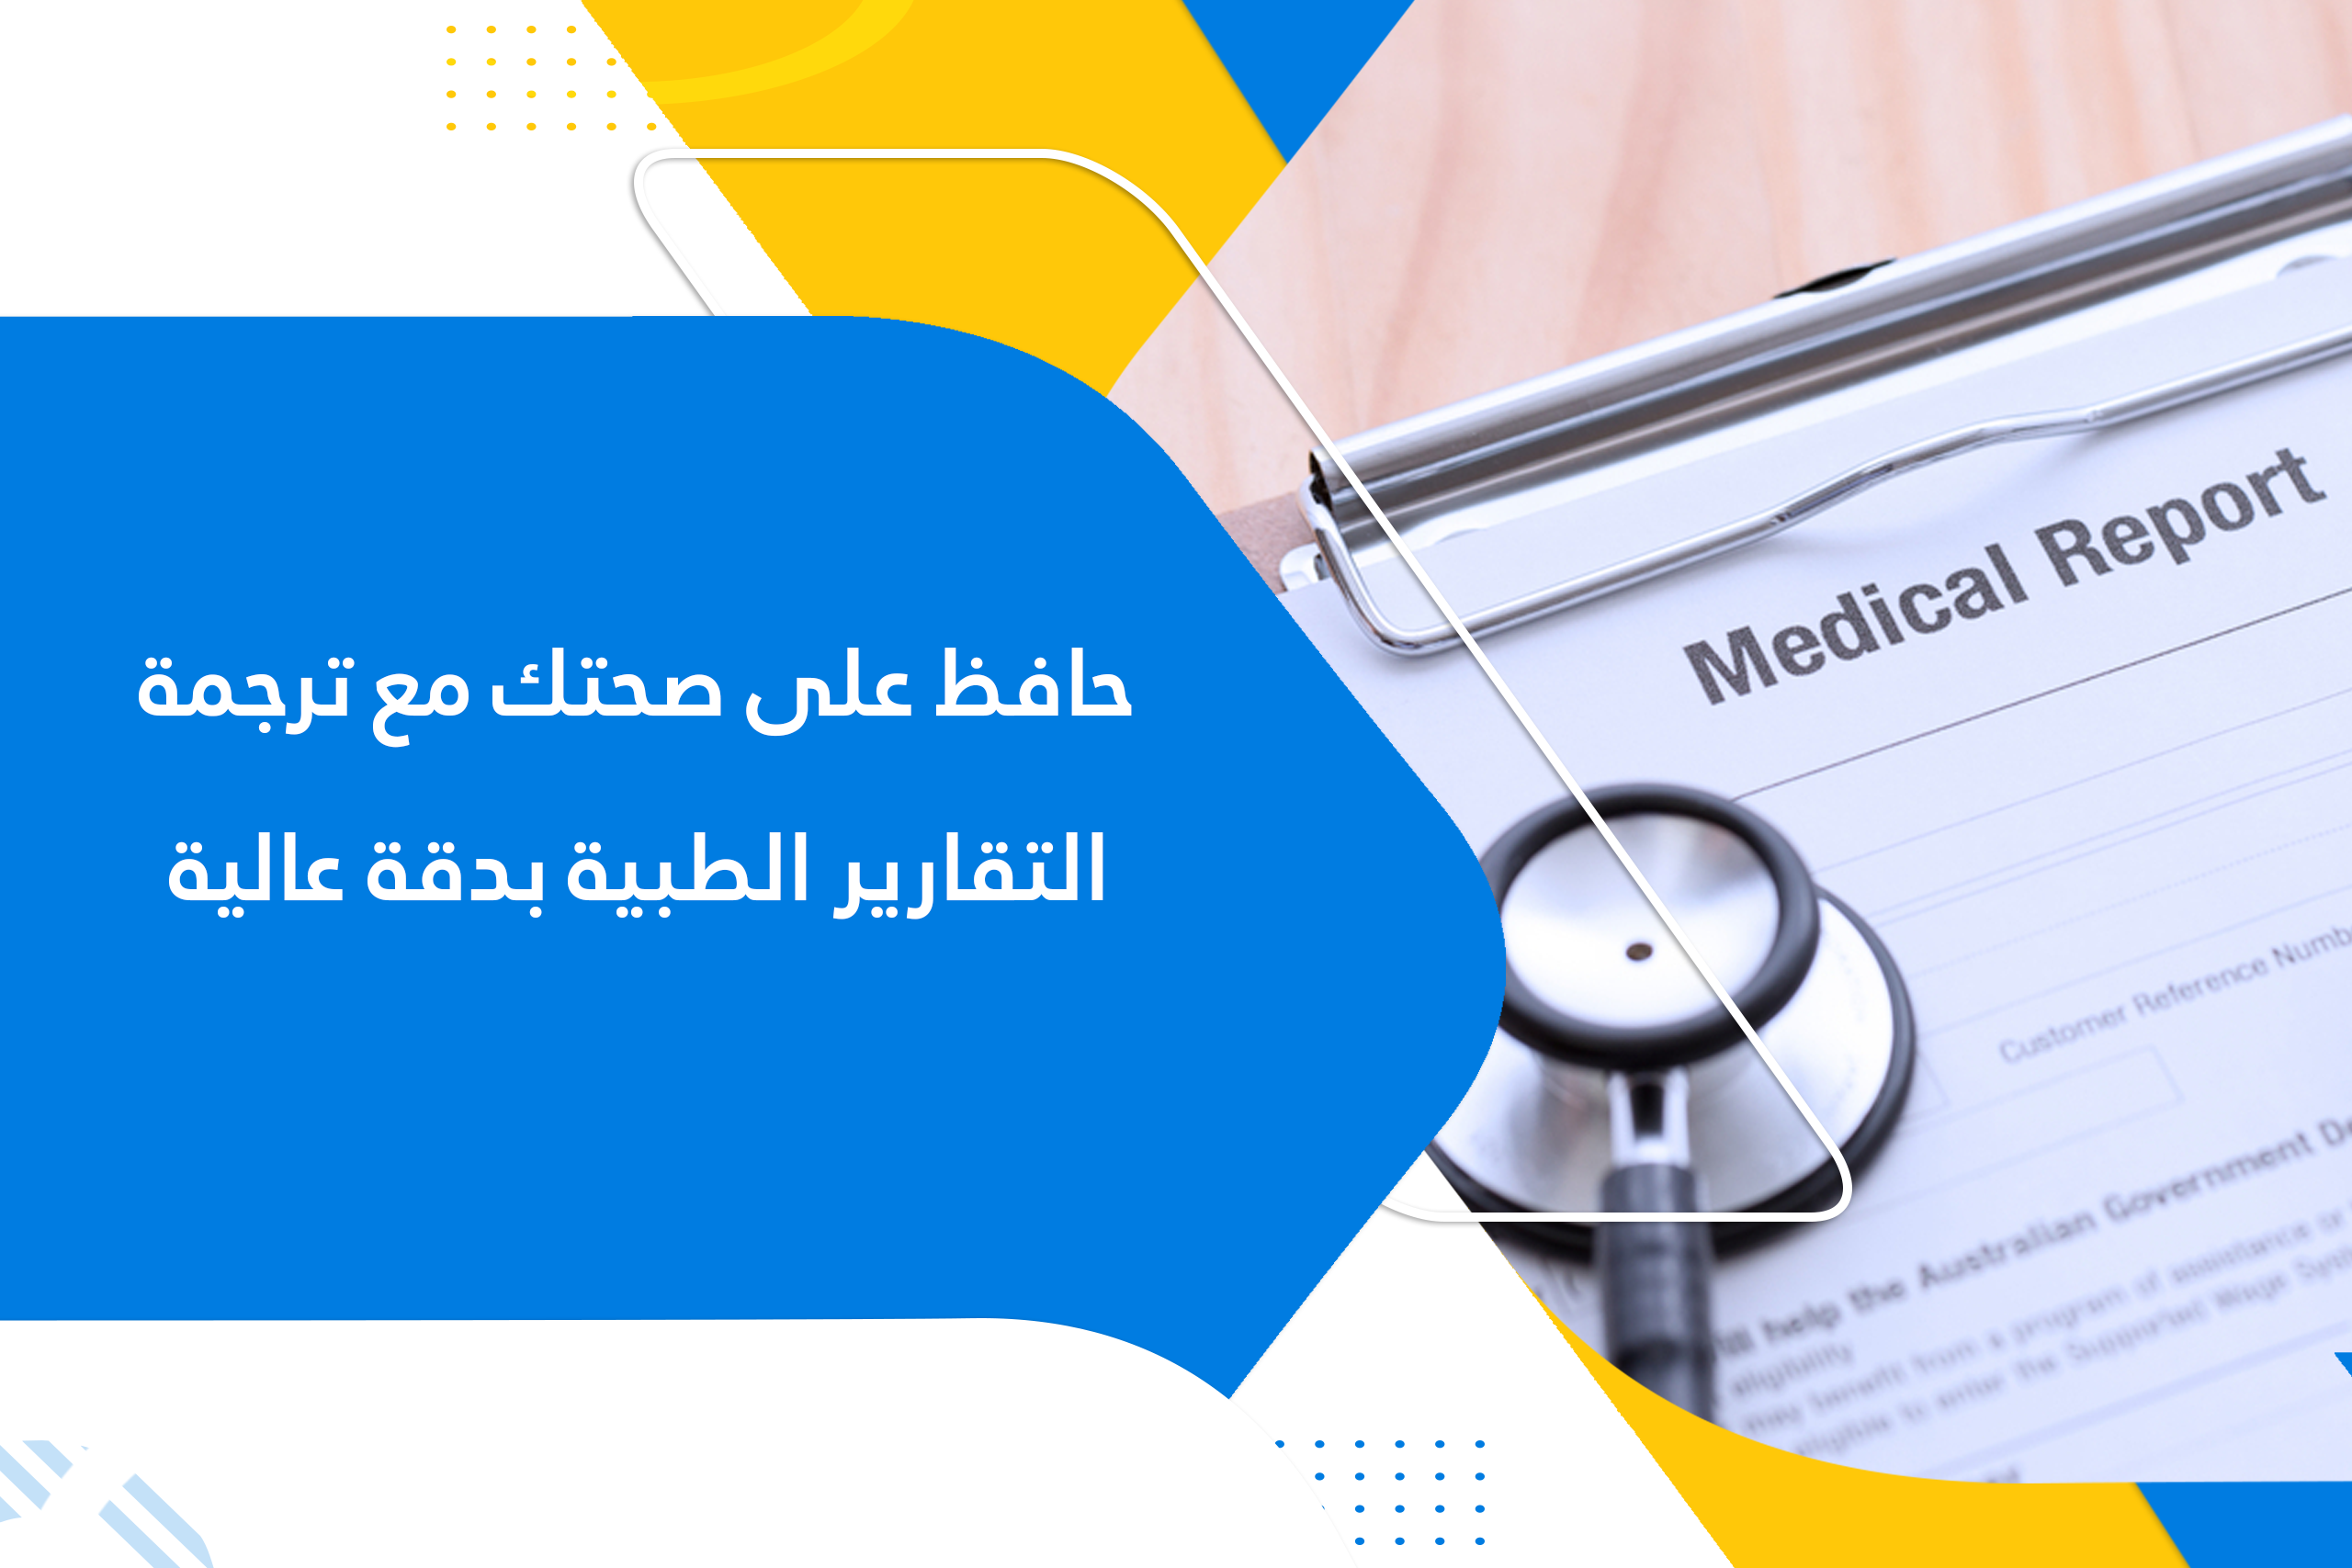 حافظ على صحتك مع ترجمة التقارير الطبية بدقة عالية